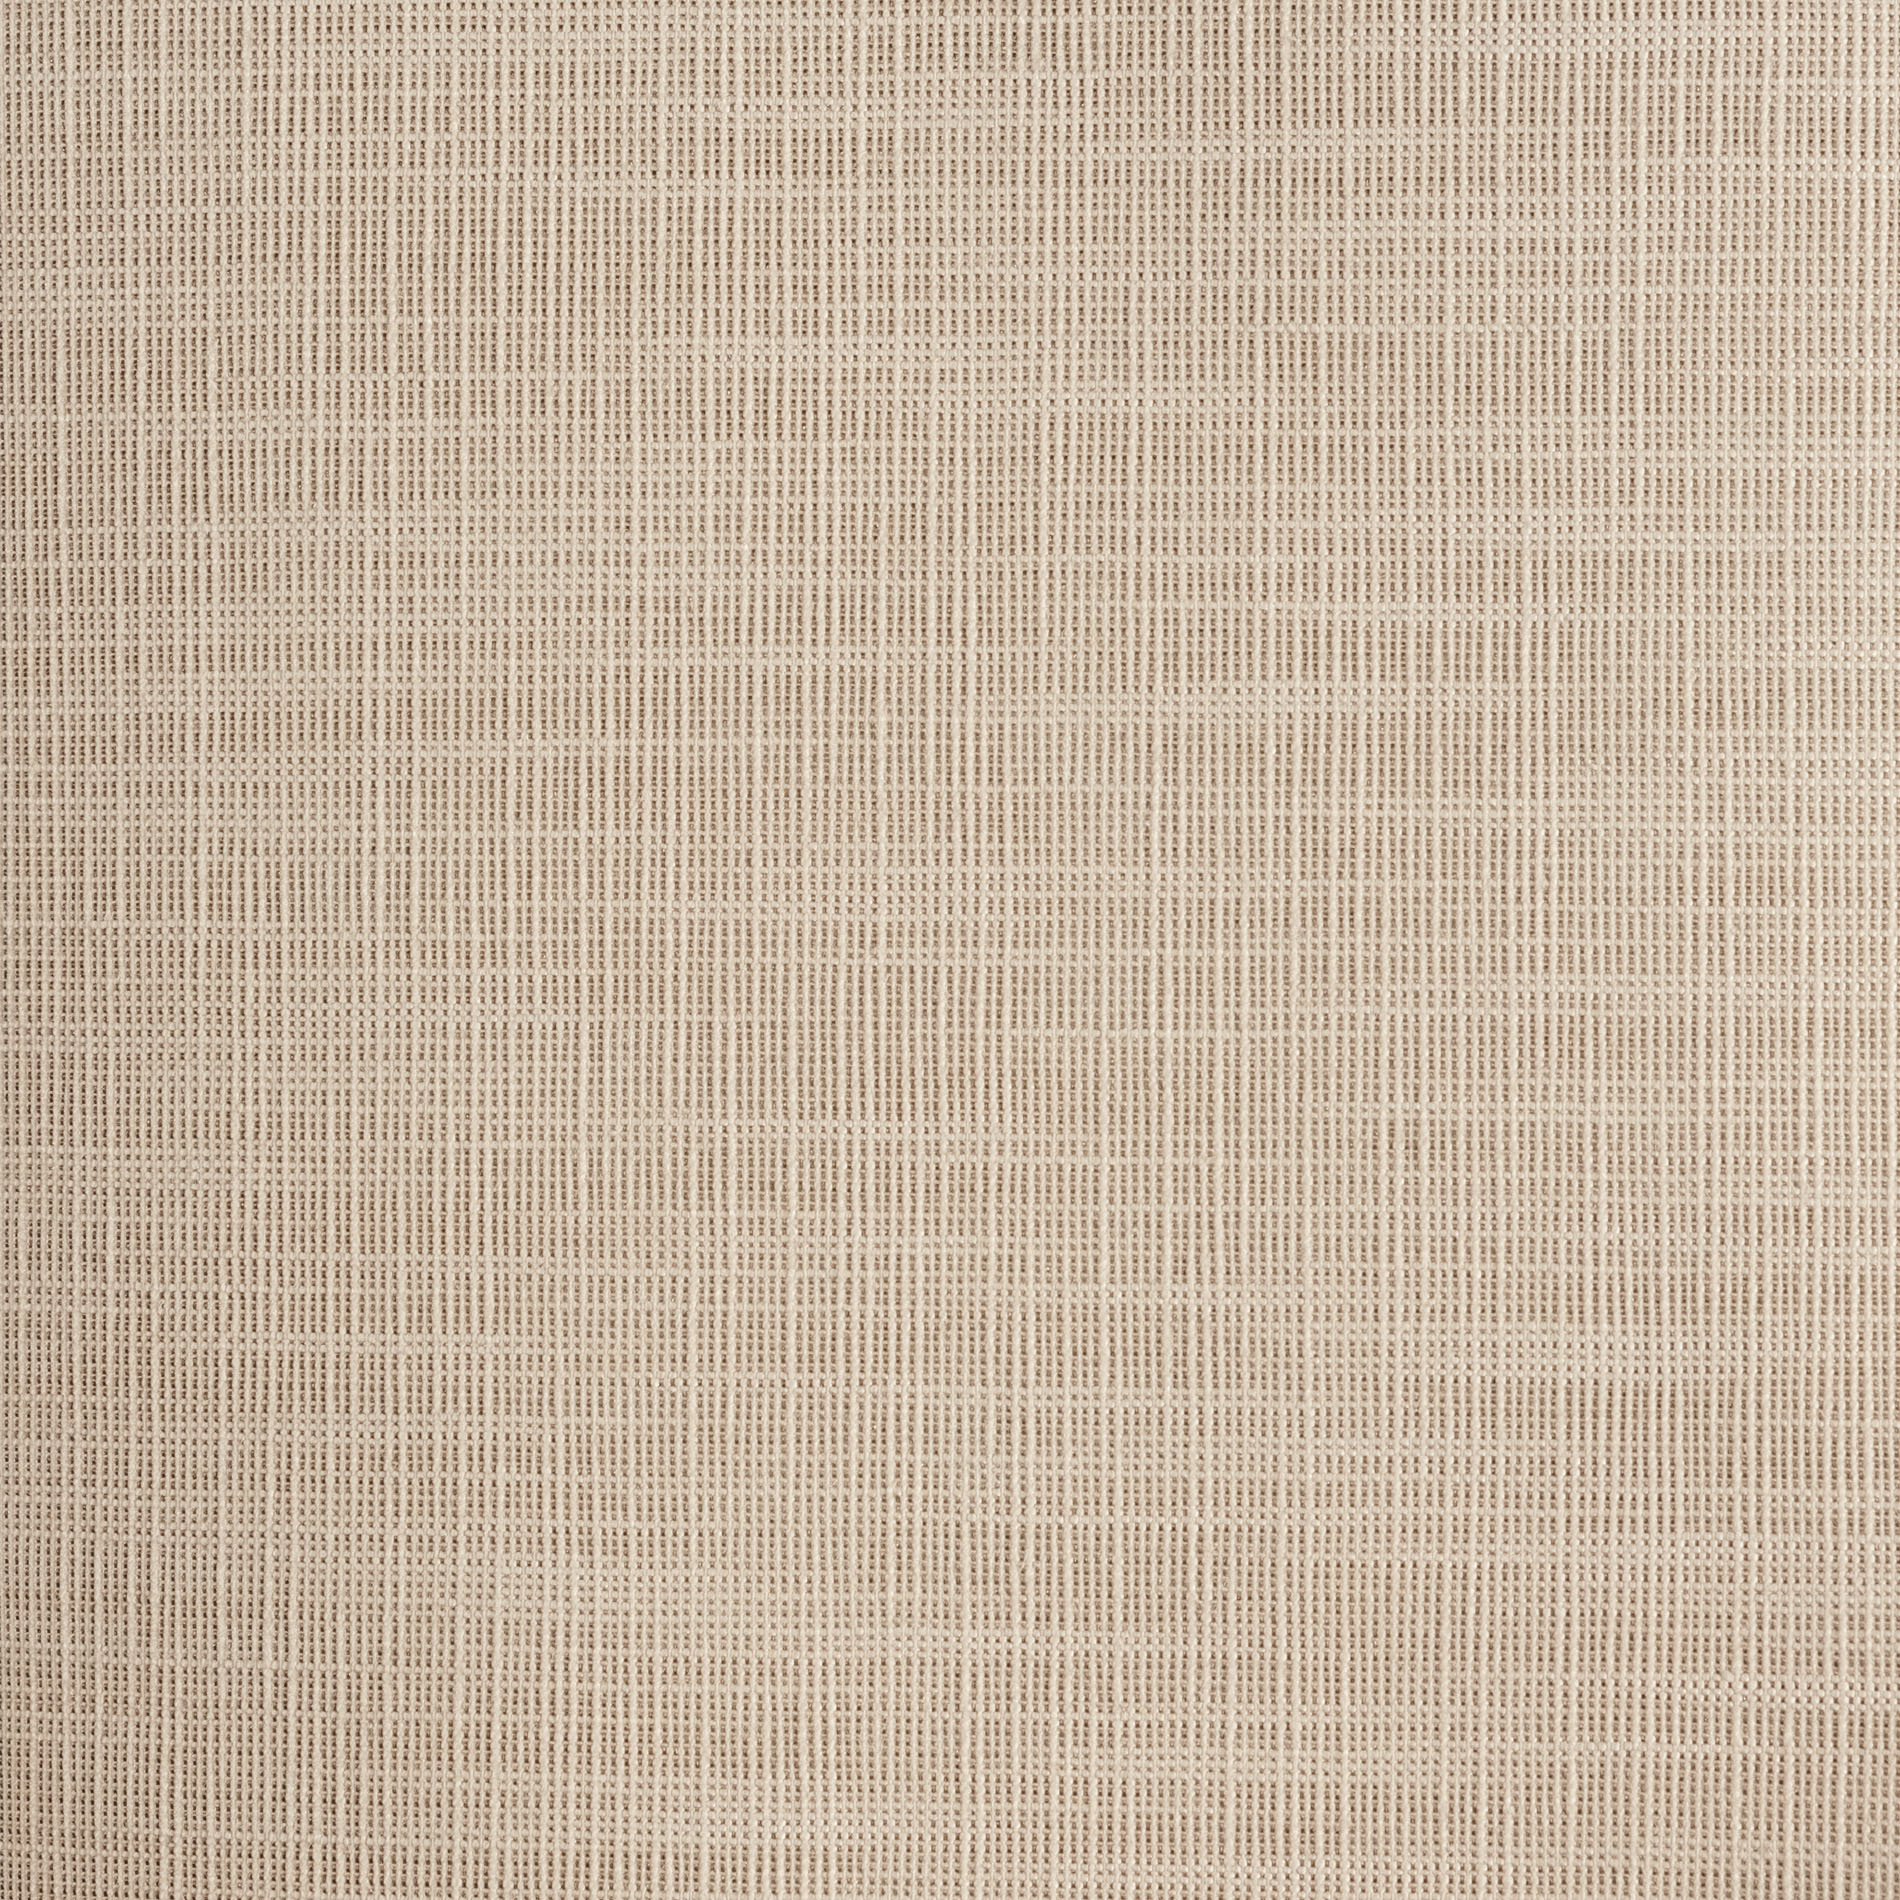 Altex - Fabric - CACHET OPAQUE - Desert Sand - 1410